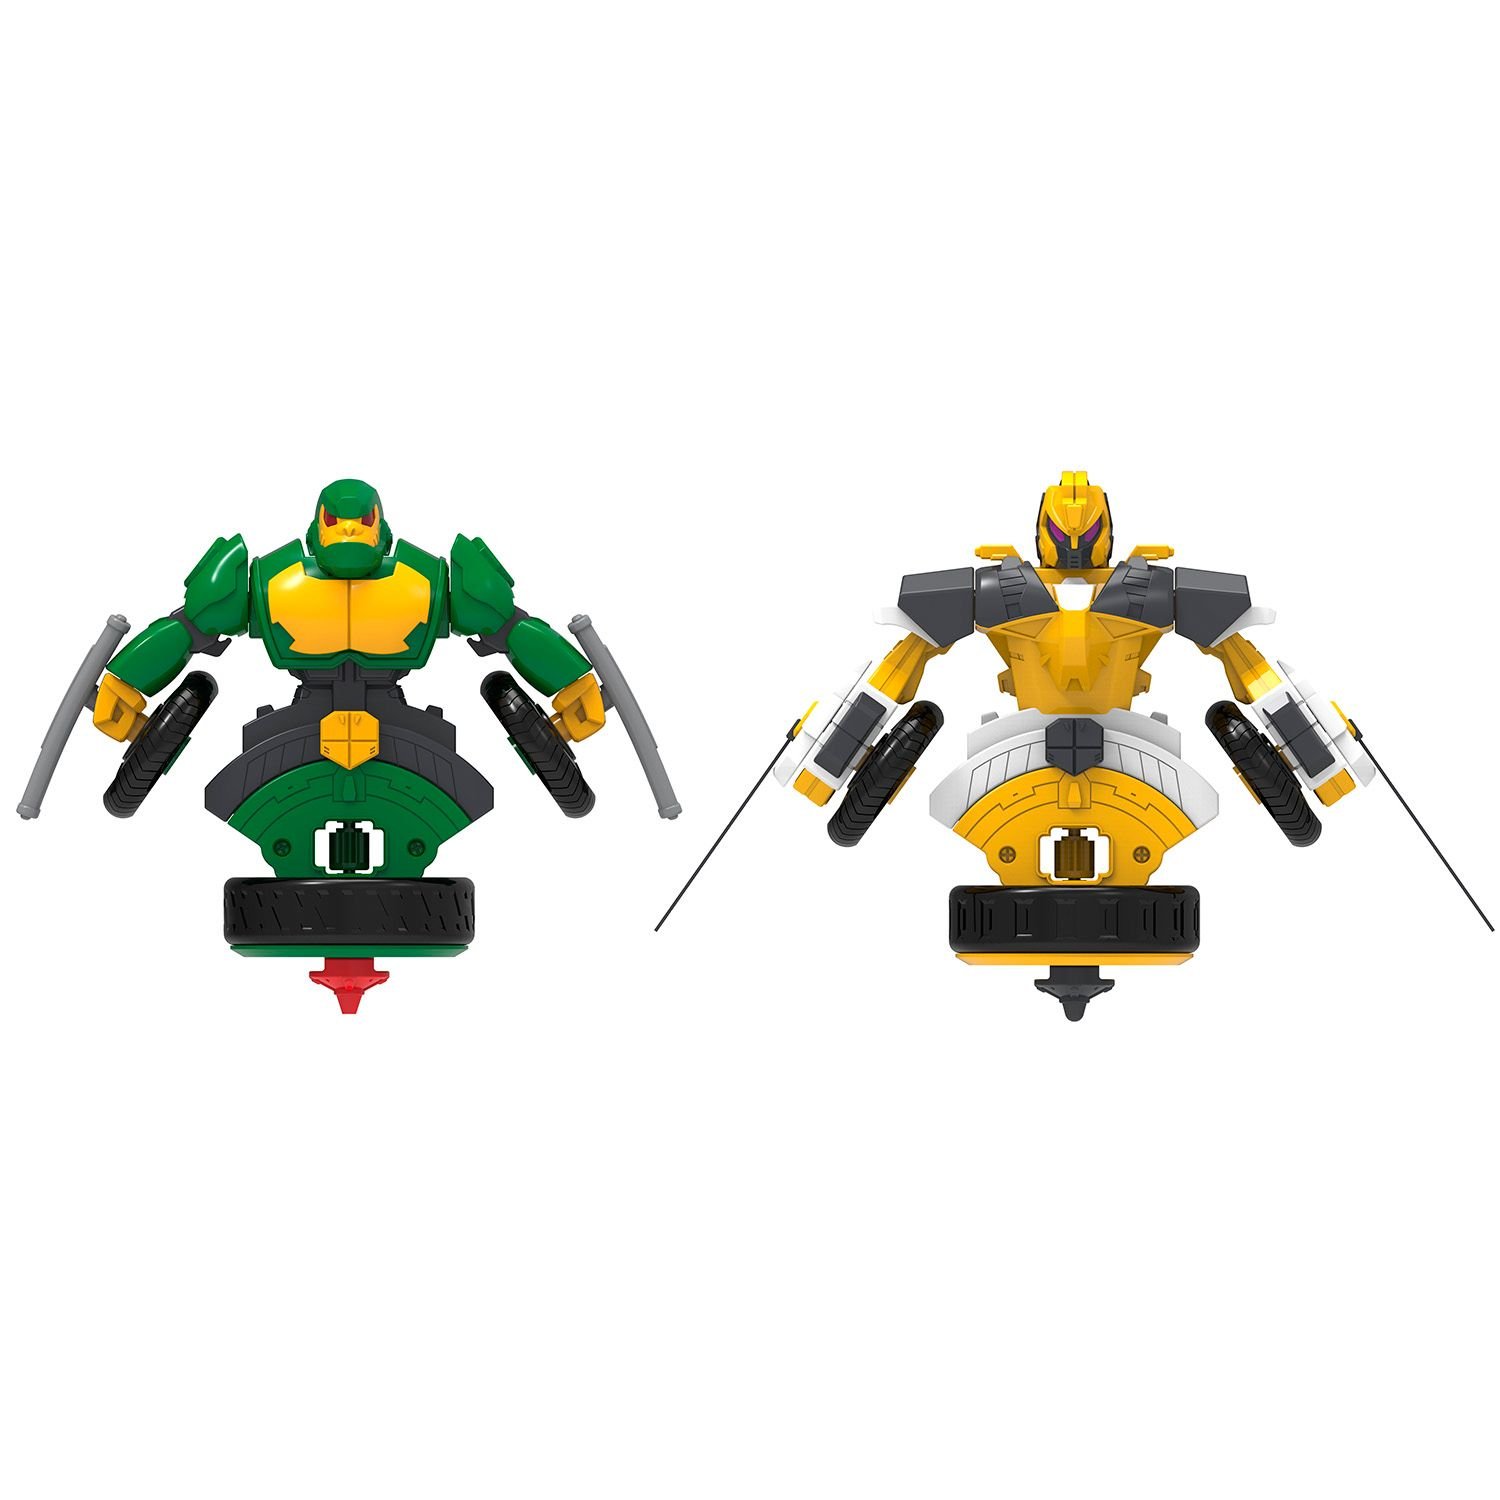 Игровой набор волчков-трансформеров 2 в 1 Spin Racers – Фантом и Молот с аксессуарами  